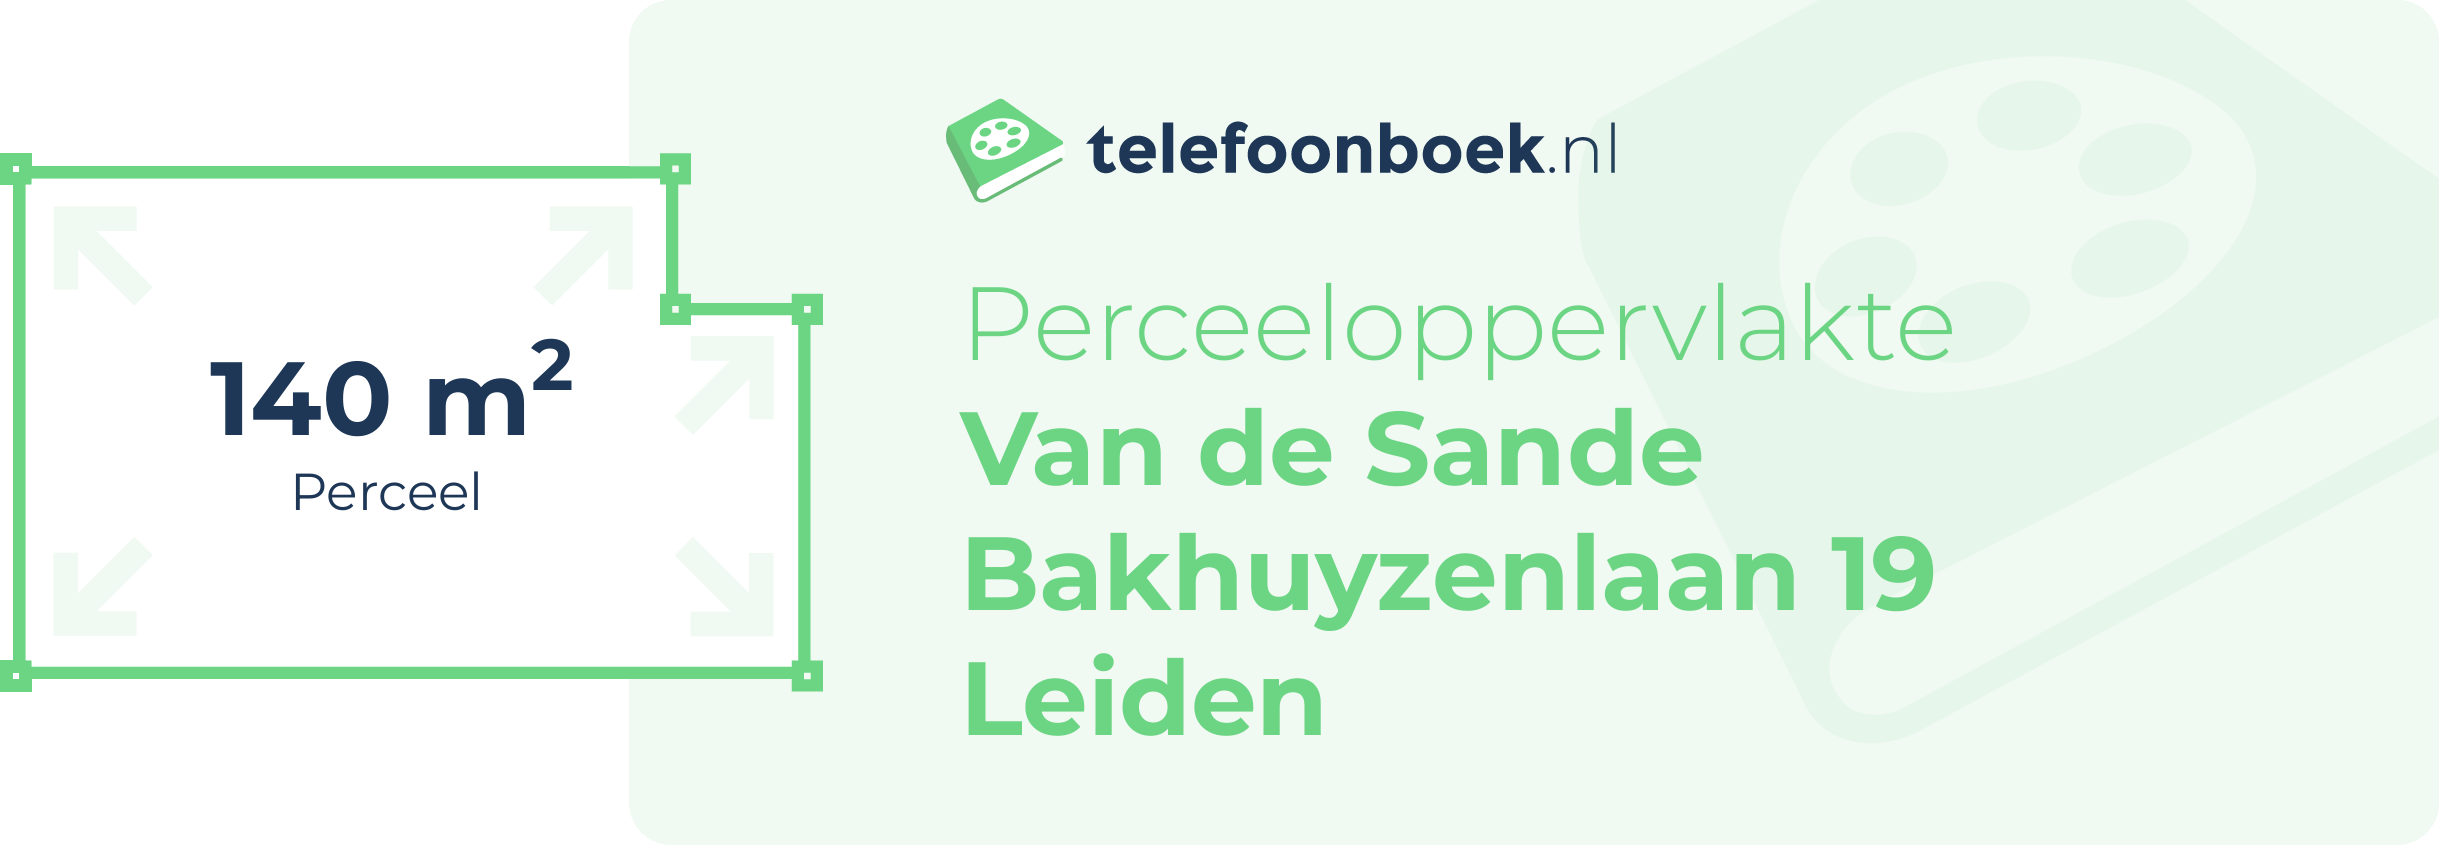 Perceeloppervlakte Van De Sande Bakhuyzenlaan 19 Leiden